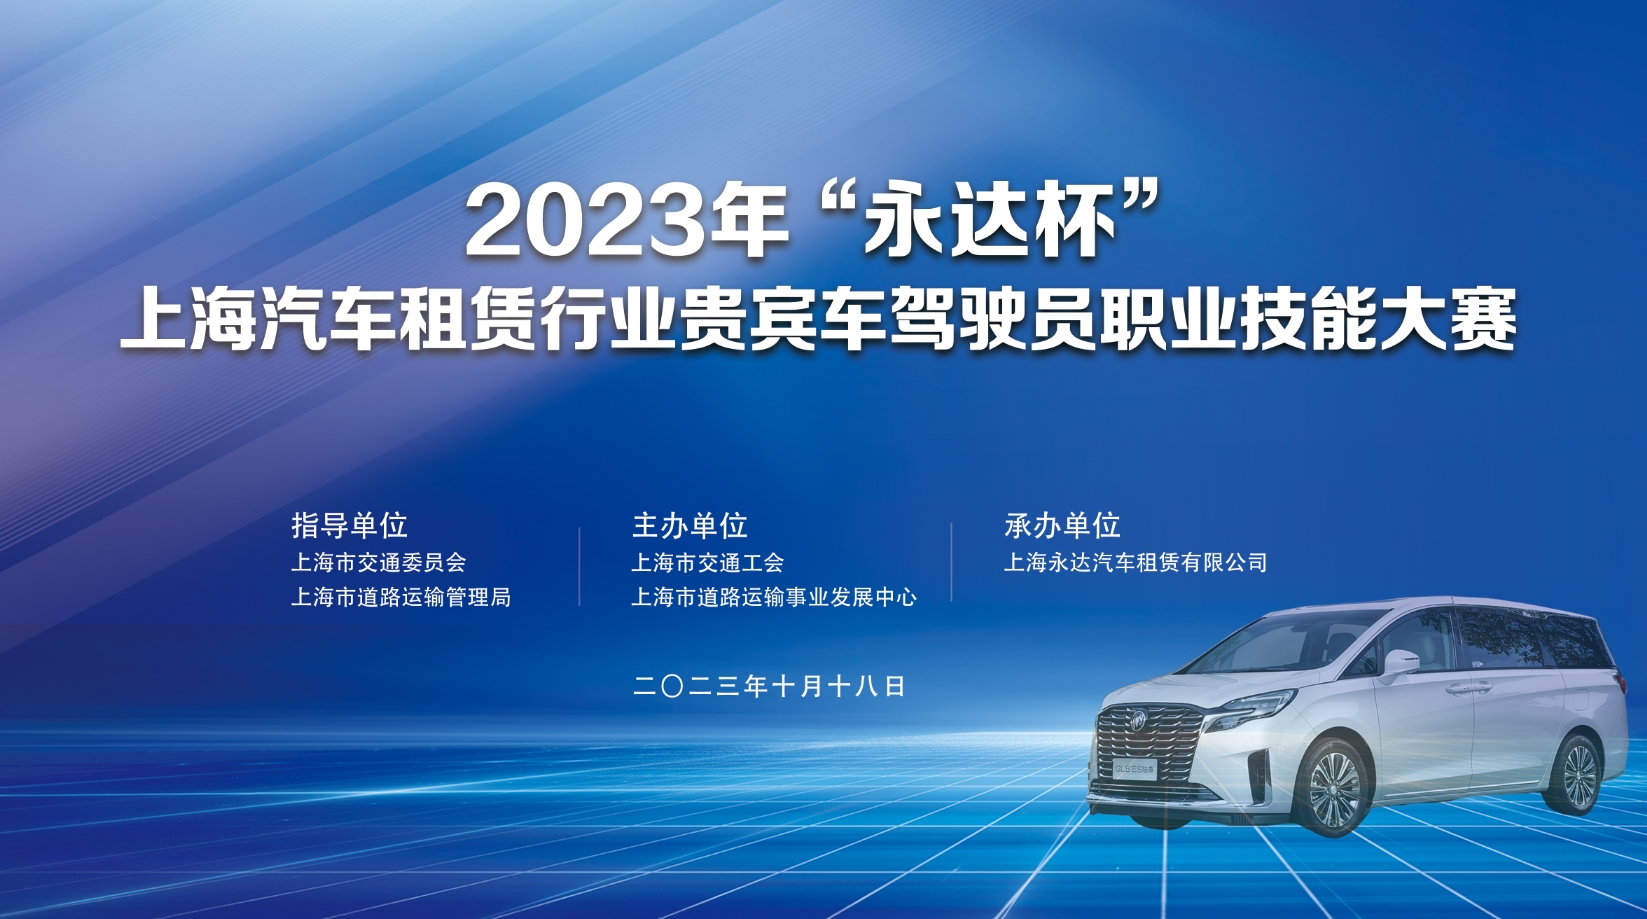 2023年“永达杯”上海汽车租赁行业贵宾车驾驶员职业技能大赛